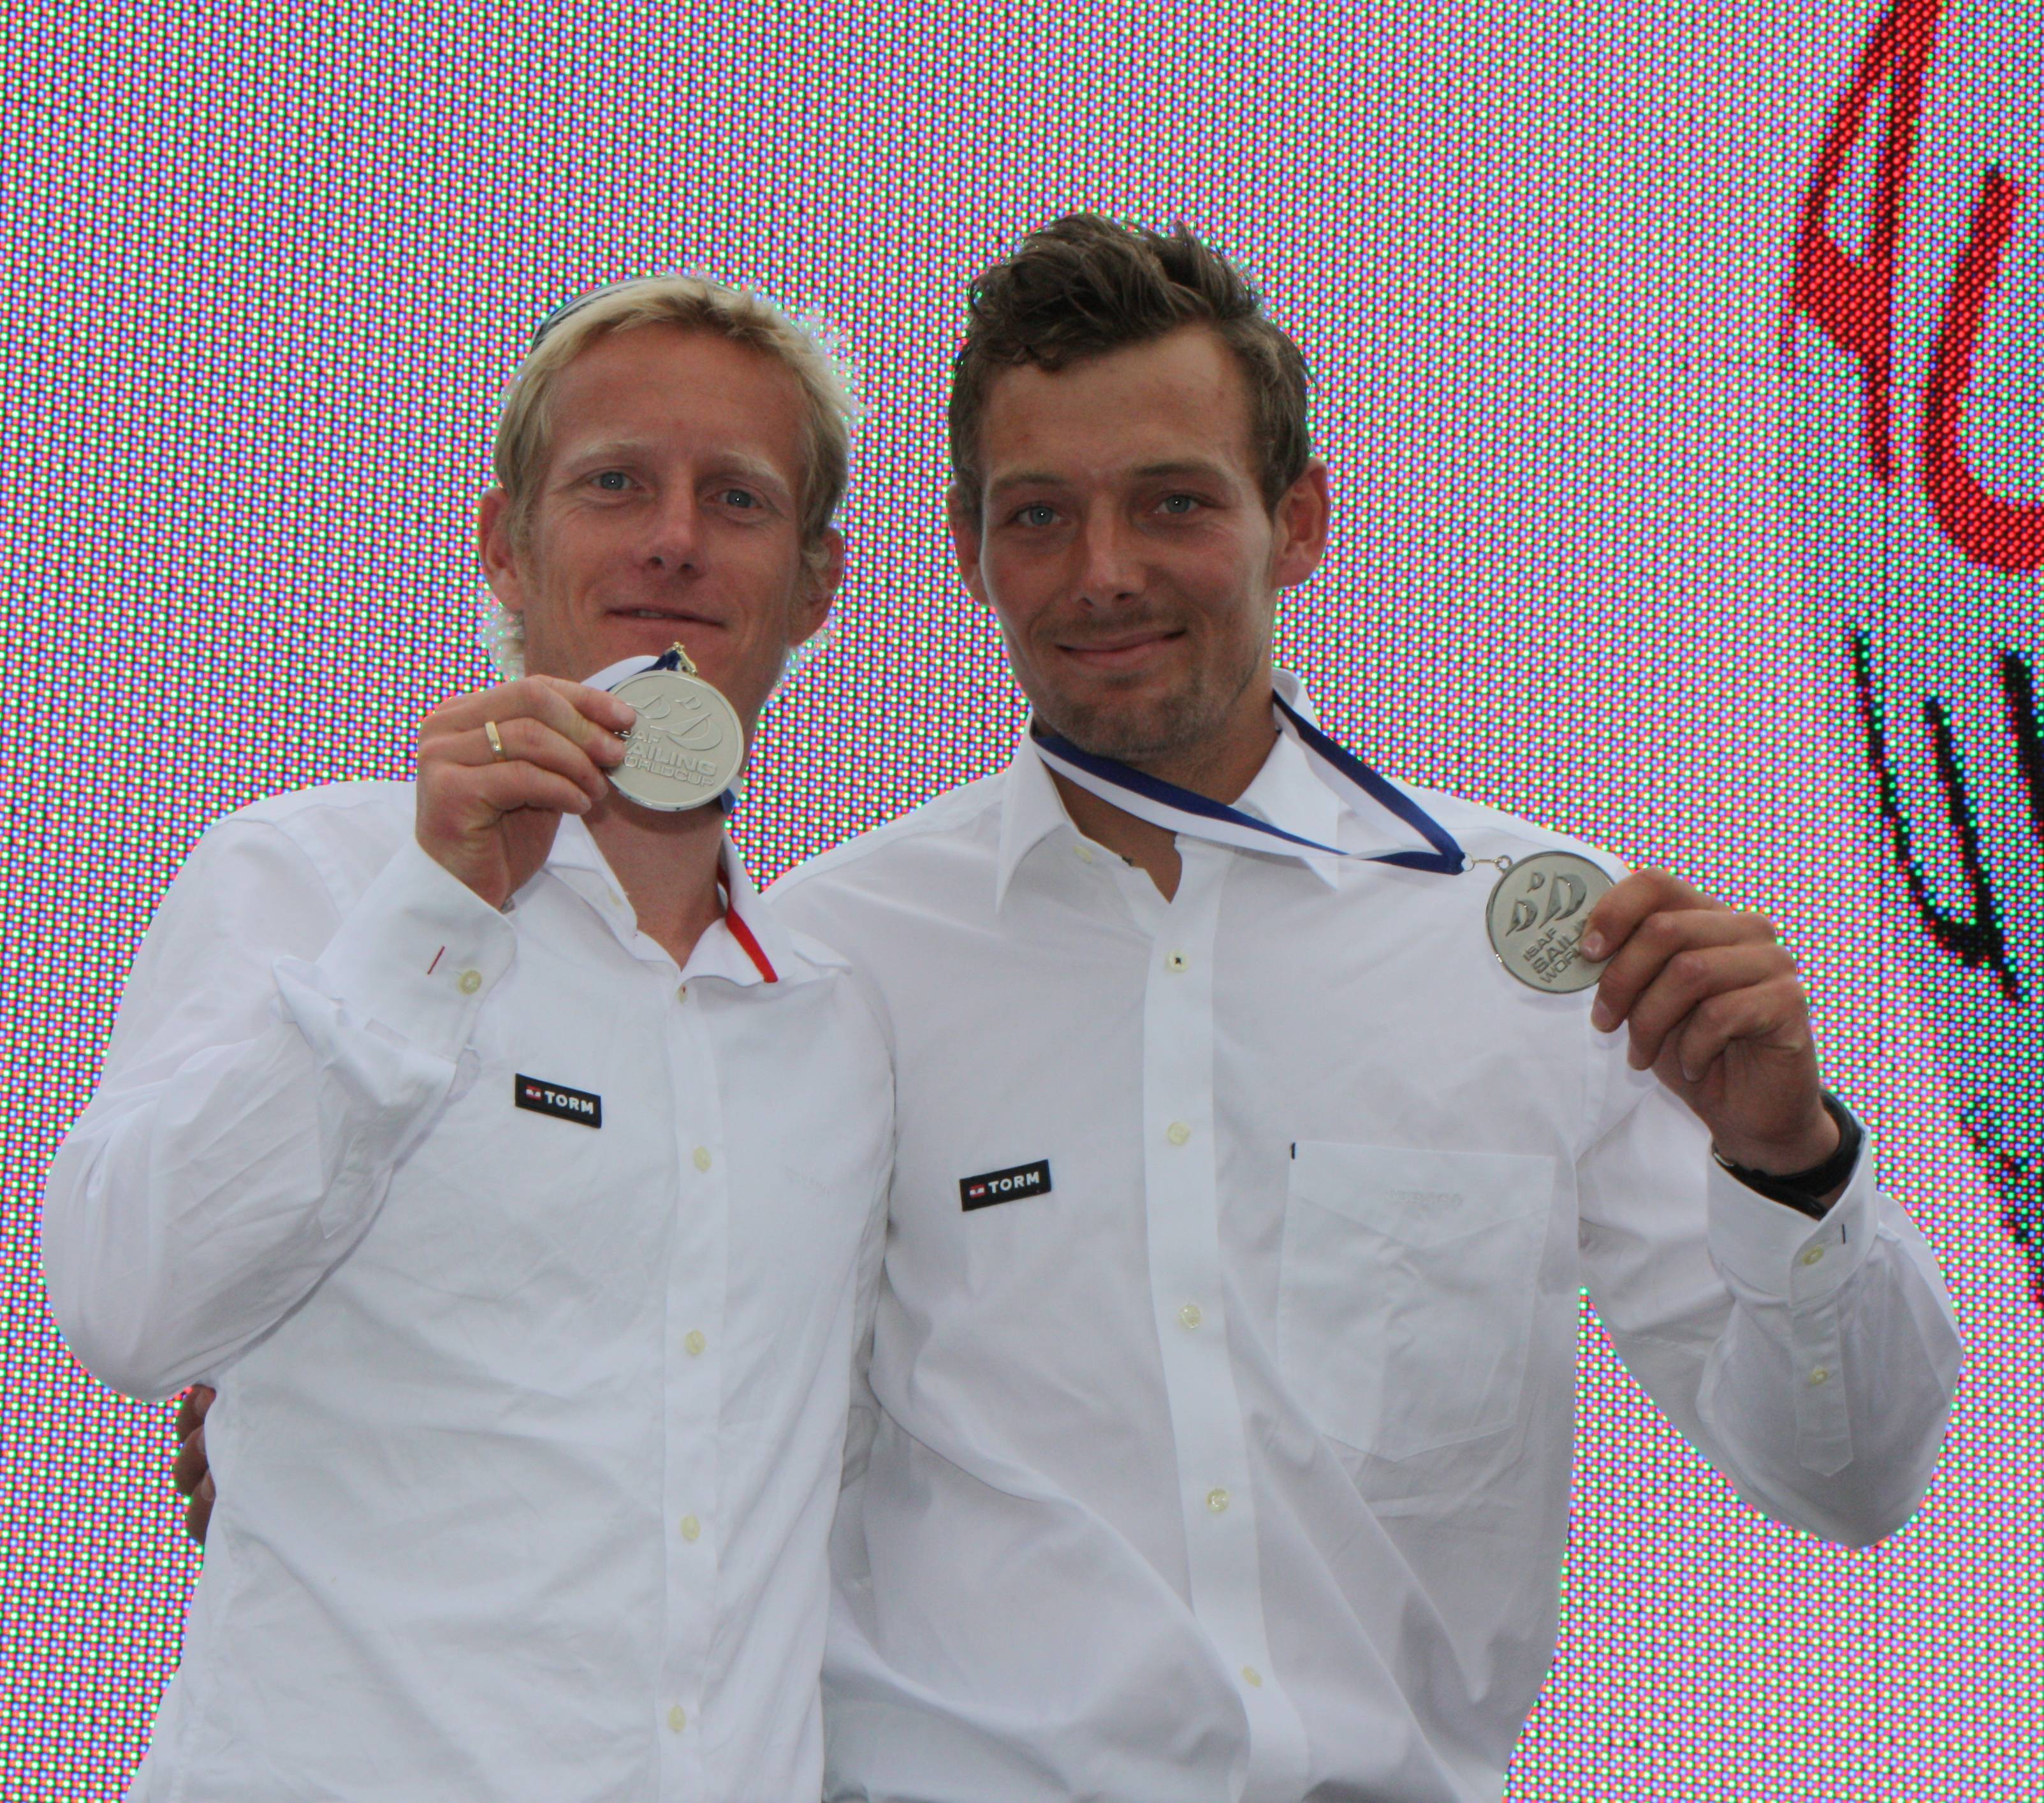 Krüger og Thorsell ses her i Kiel fornylig hvor de vandt sølv. Foto: Christian M. Borch/sejlsport.dk